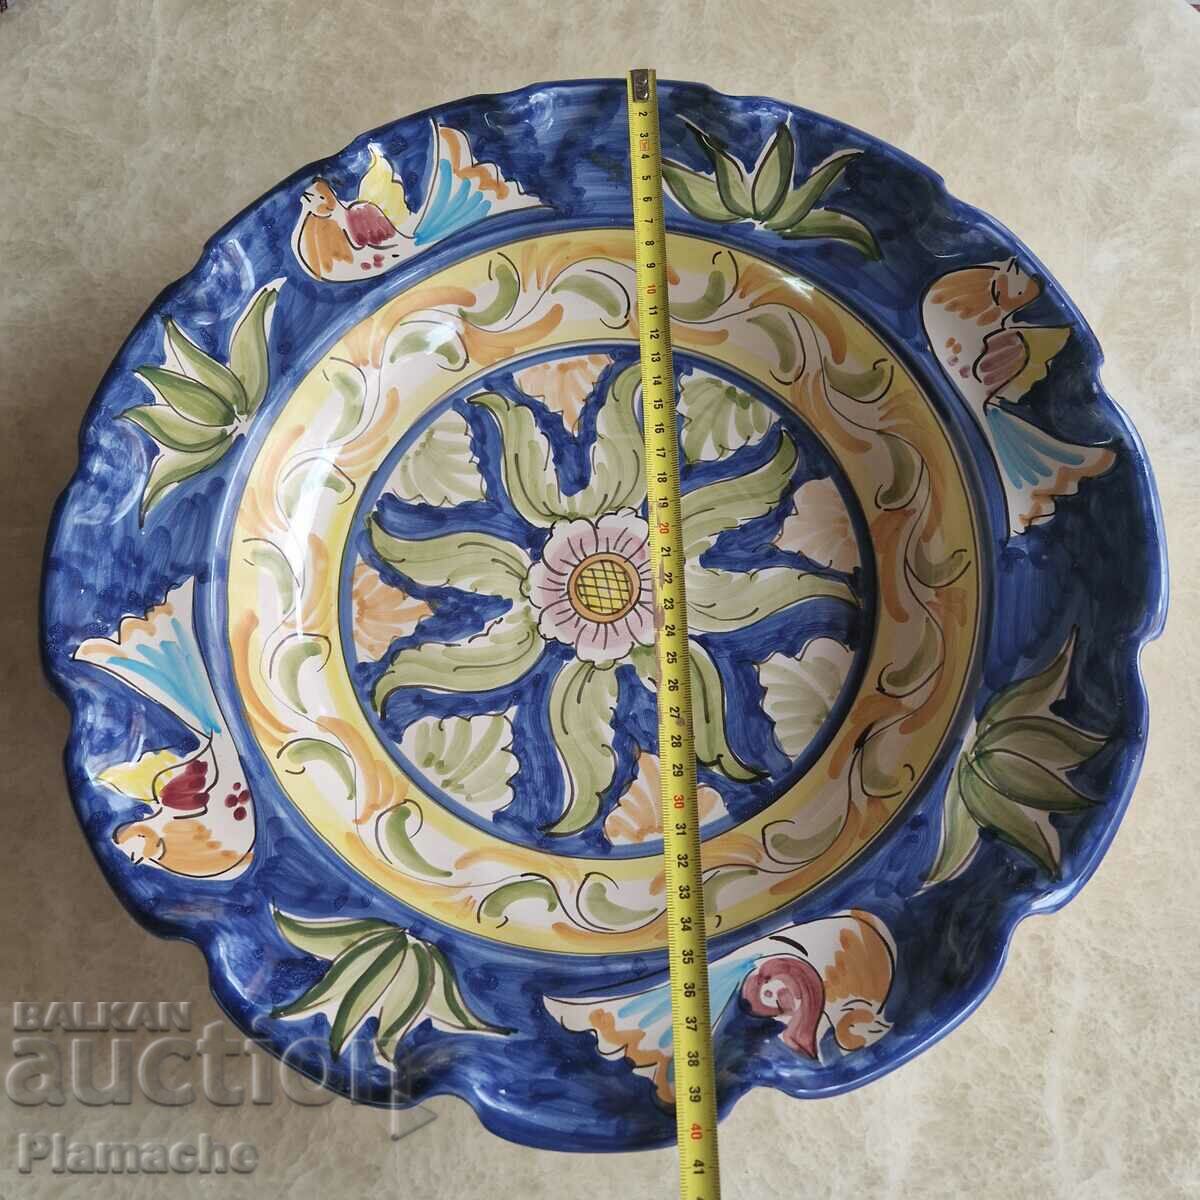 Massive ceramic plate platter